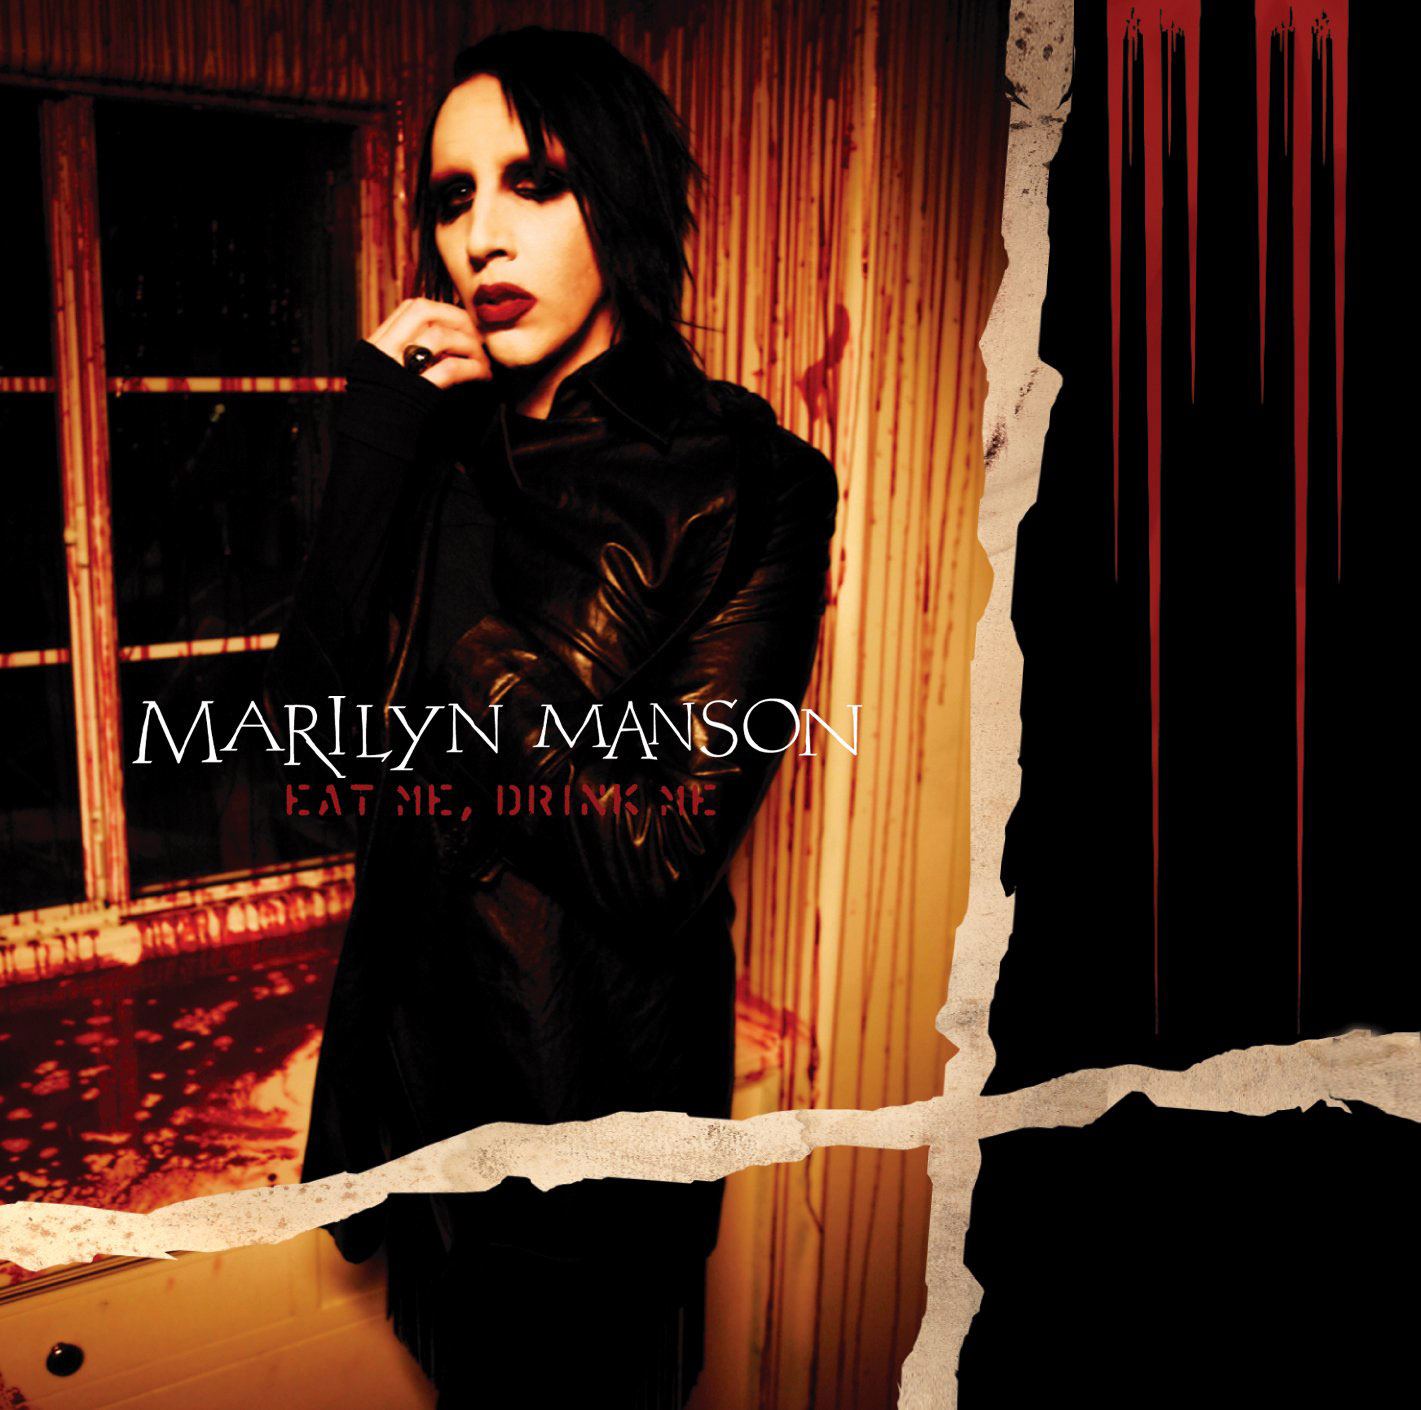 http://2.bp.blogspot.com/-mtmIHfQ1eEk/T-jRP1v3wHI/AAAAAAAAAZE/ksfJNM2CCMY/s1600/Marilyn+Manson+eat+me+drink+me.jpg